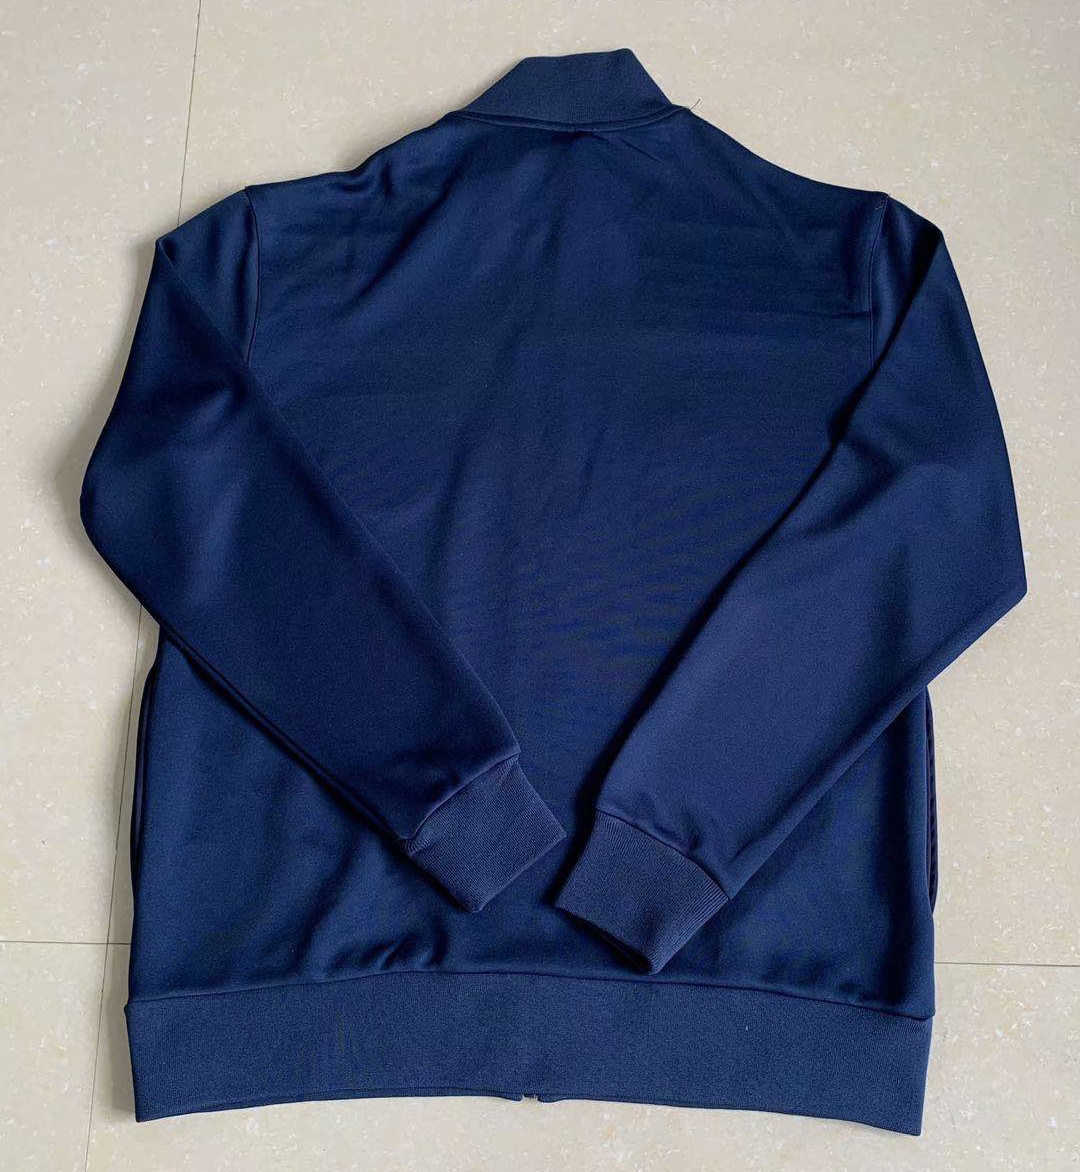 1980 England Retro Blue Men Soccer Jacket - Click Image to Close